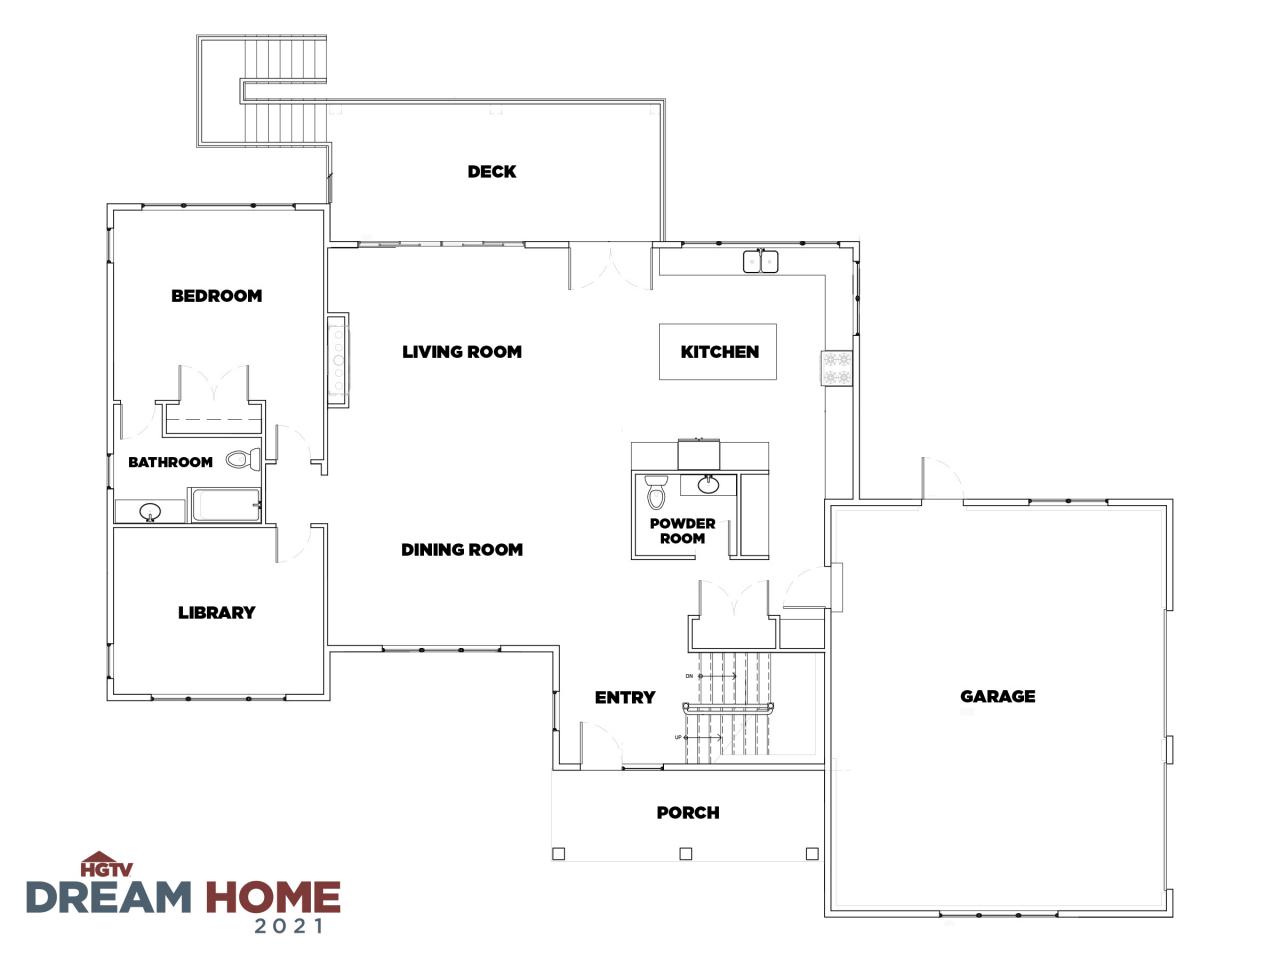 Discover the Floor Plan for HGTV Dream Home 2021 HGTV